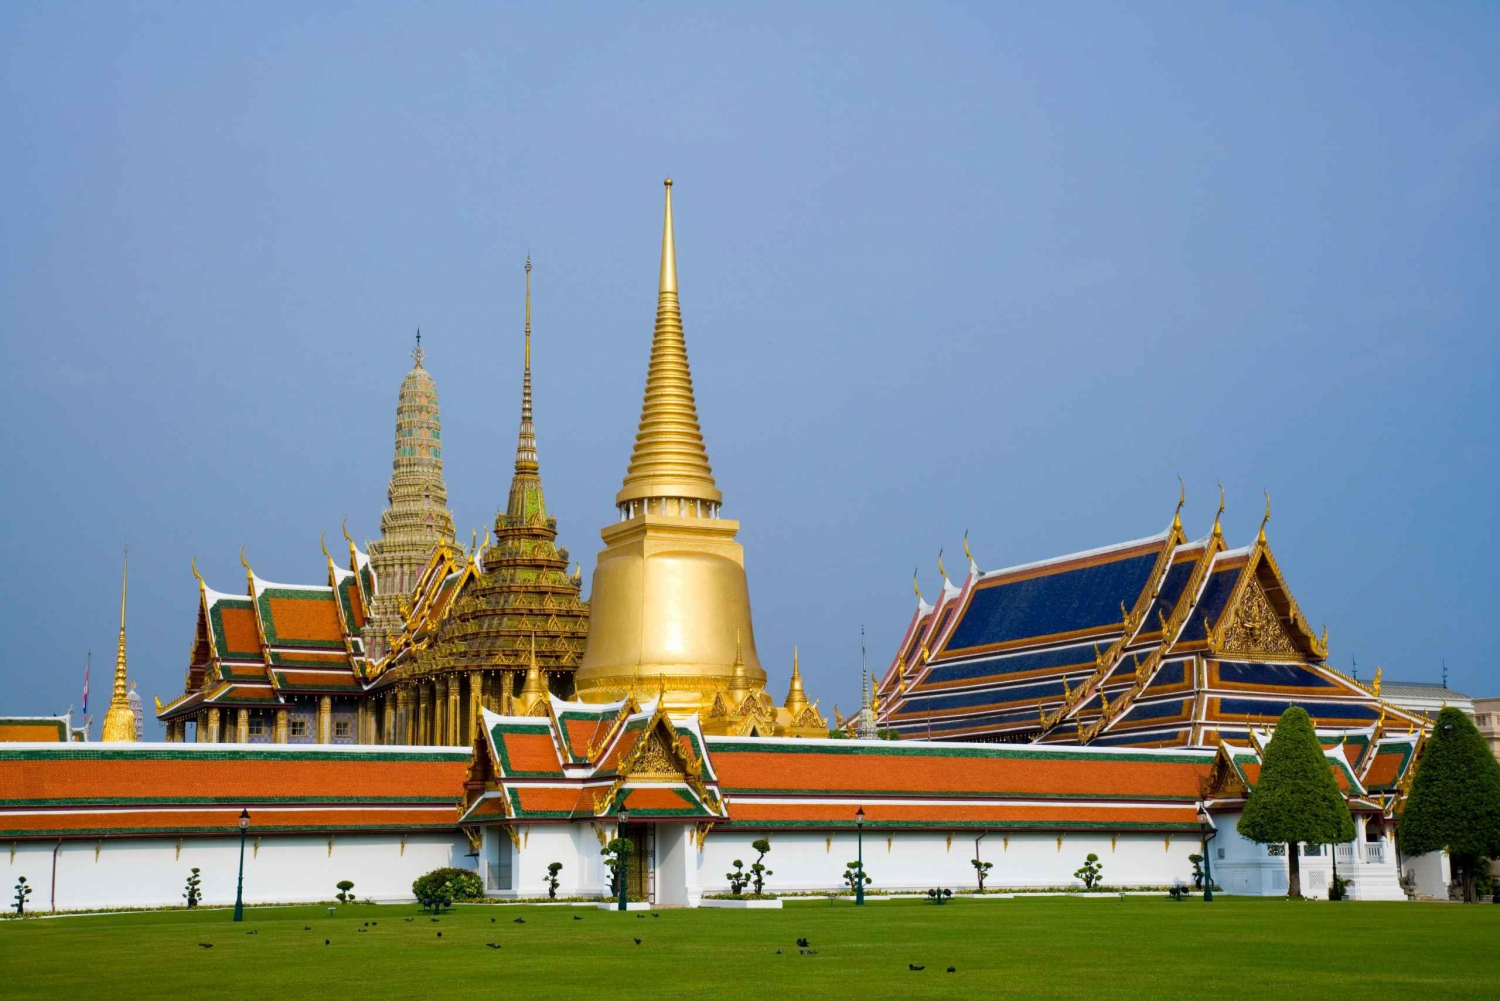 Bangkok: Wielki Pałac, Wat Arun i wycieczka do Nowego Wielkiego Buddy